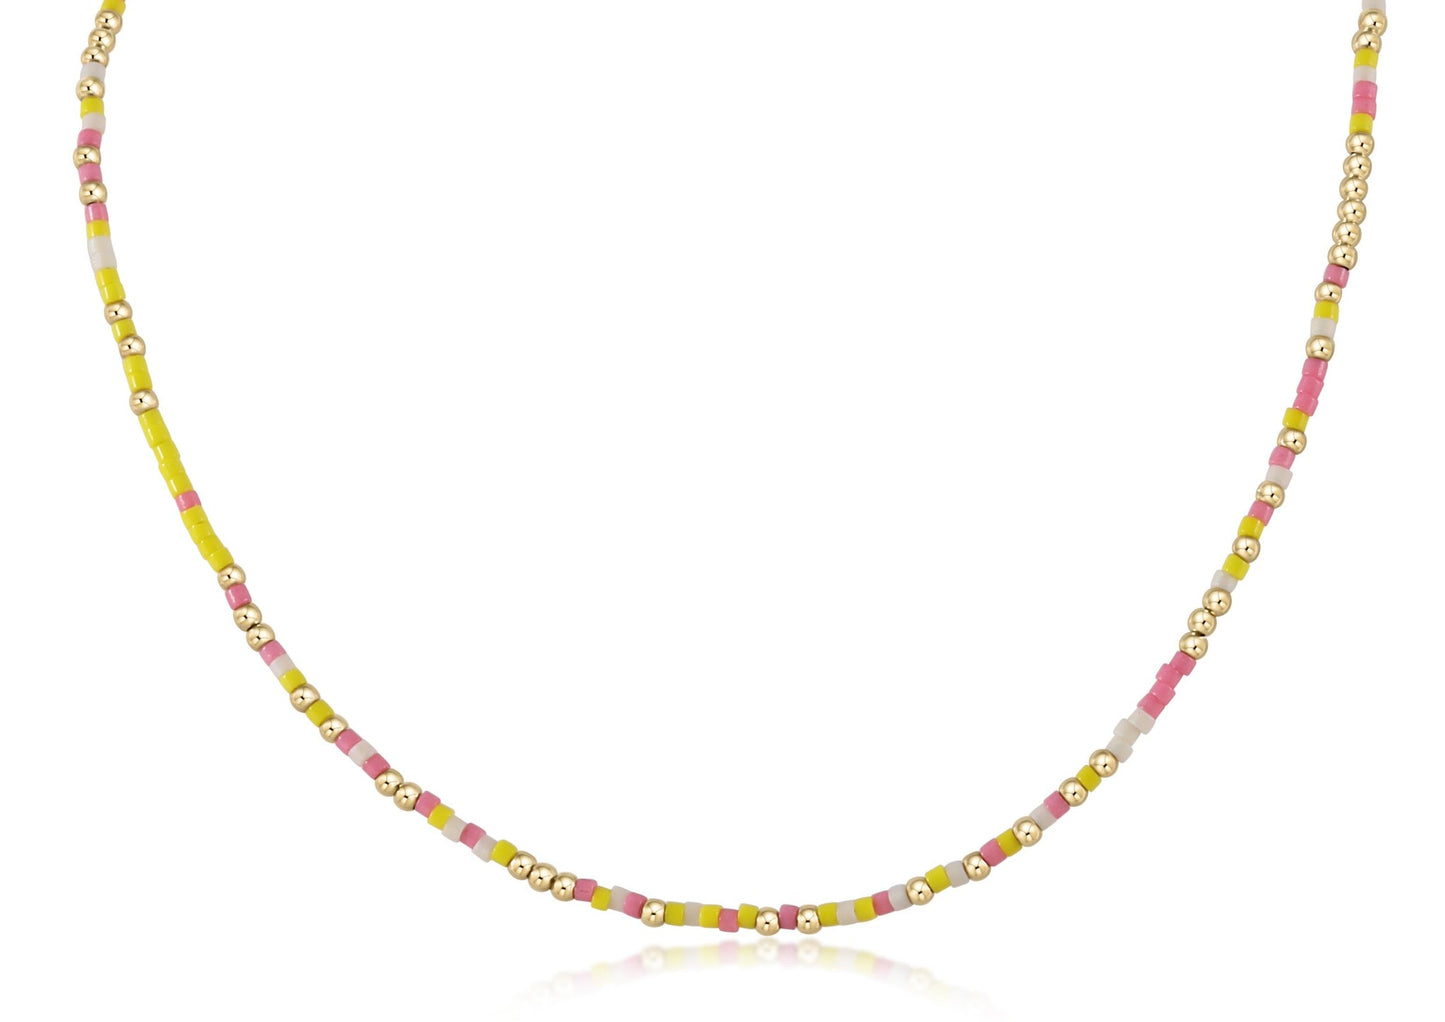 15" Hope Unwritten Choker - Pink Lemonade Women's Jewelry enewton   